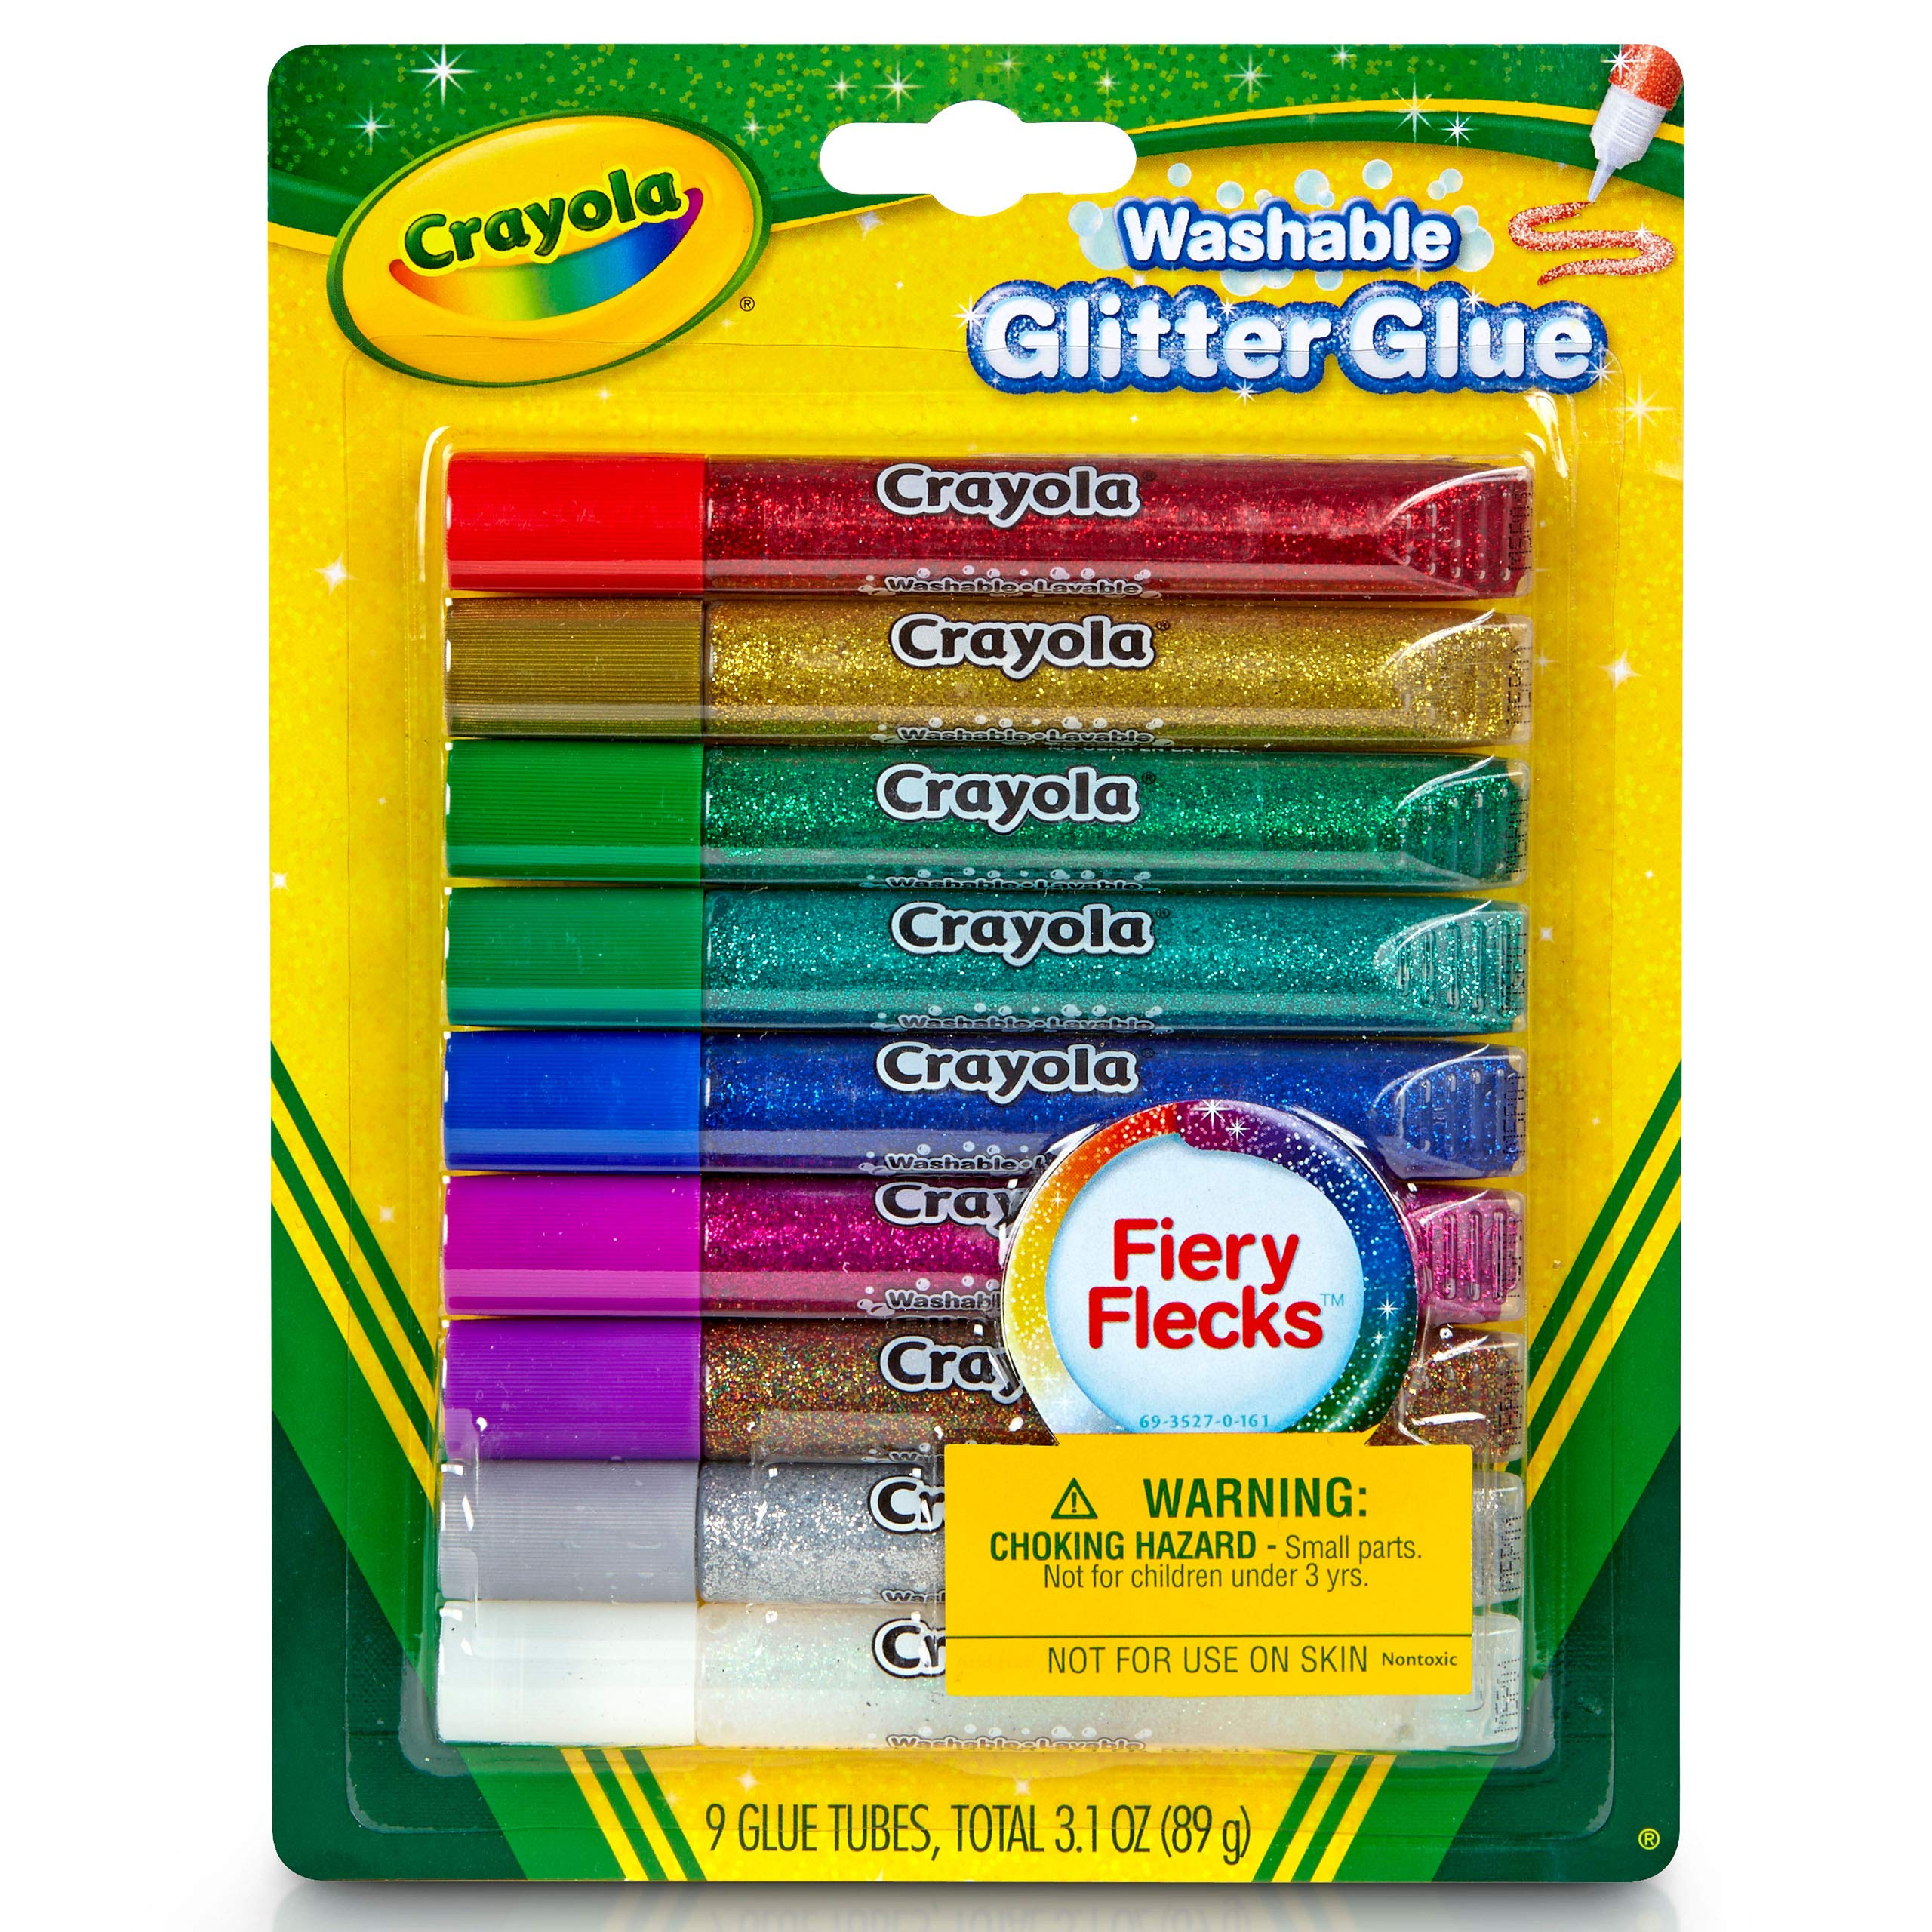 Crayola Washable Glitter Glue 9 pcs